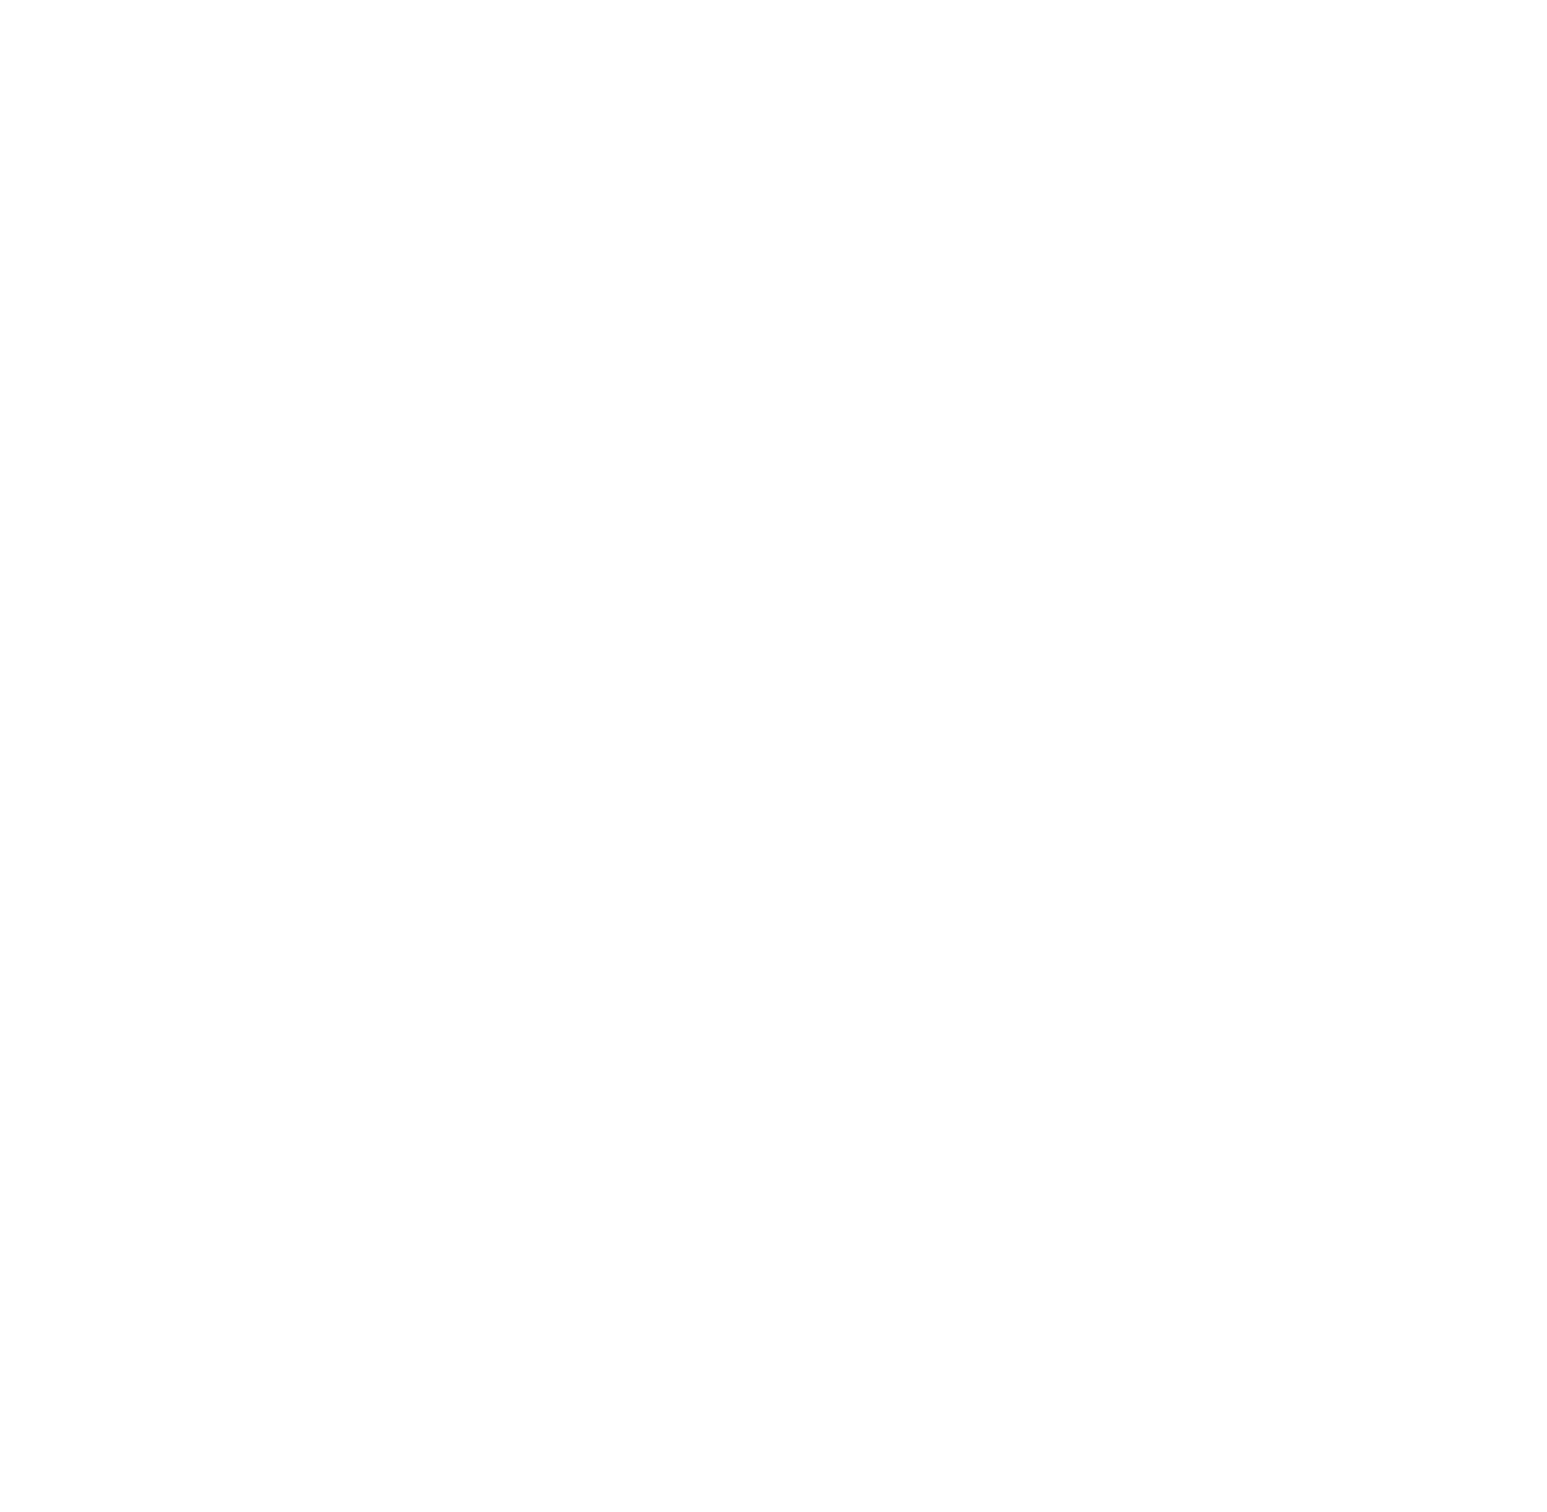 Ooredoo Oman logo for dark backgrounds (transparent PNG)